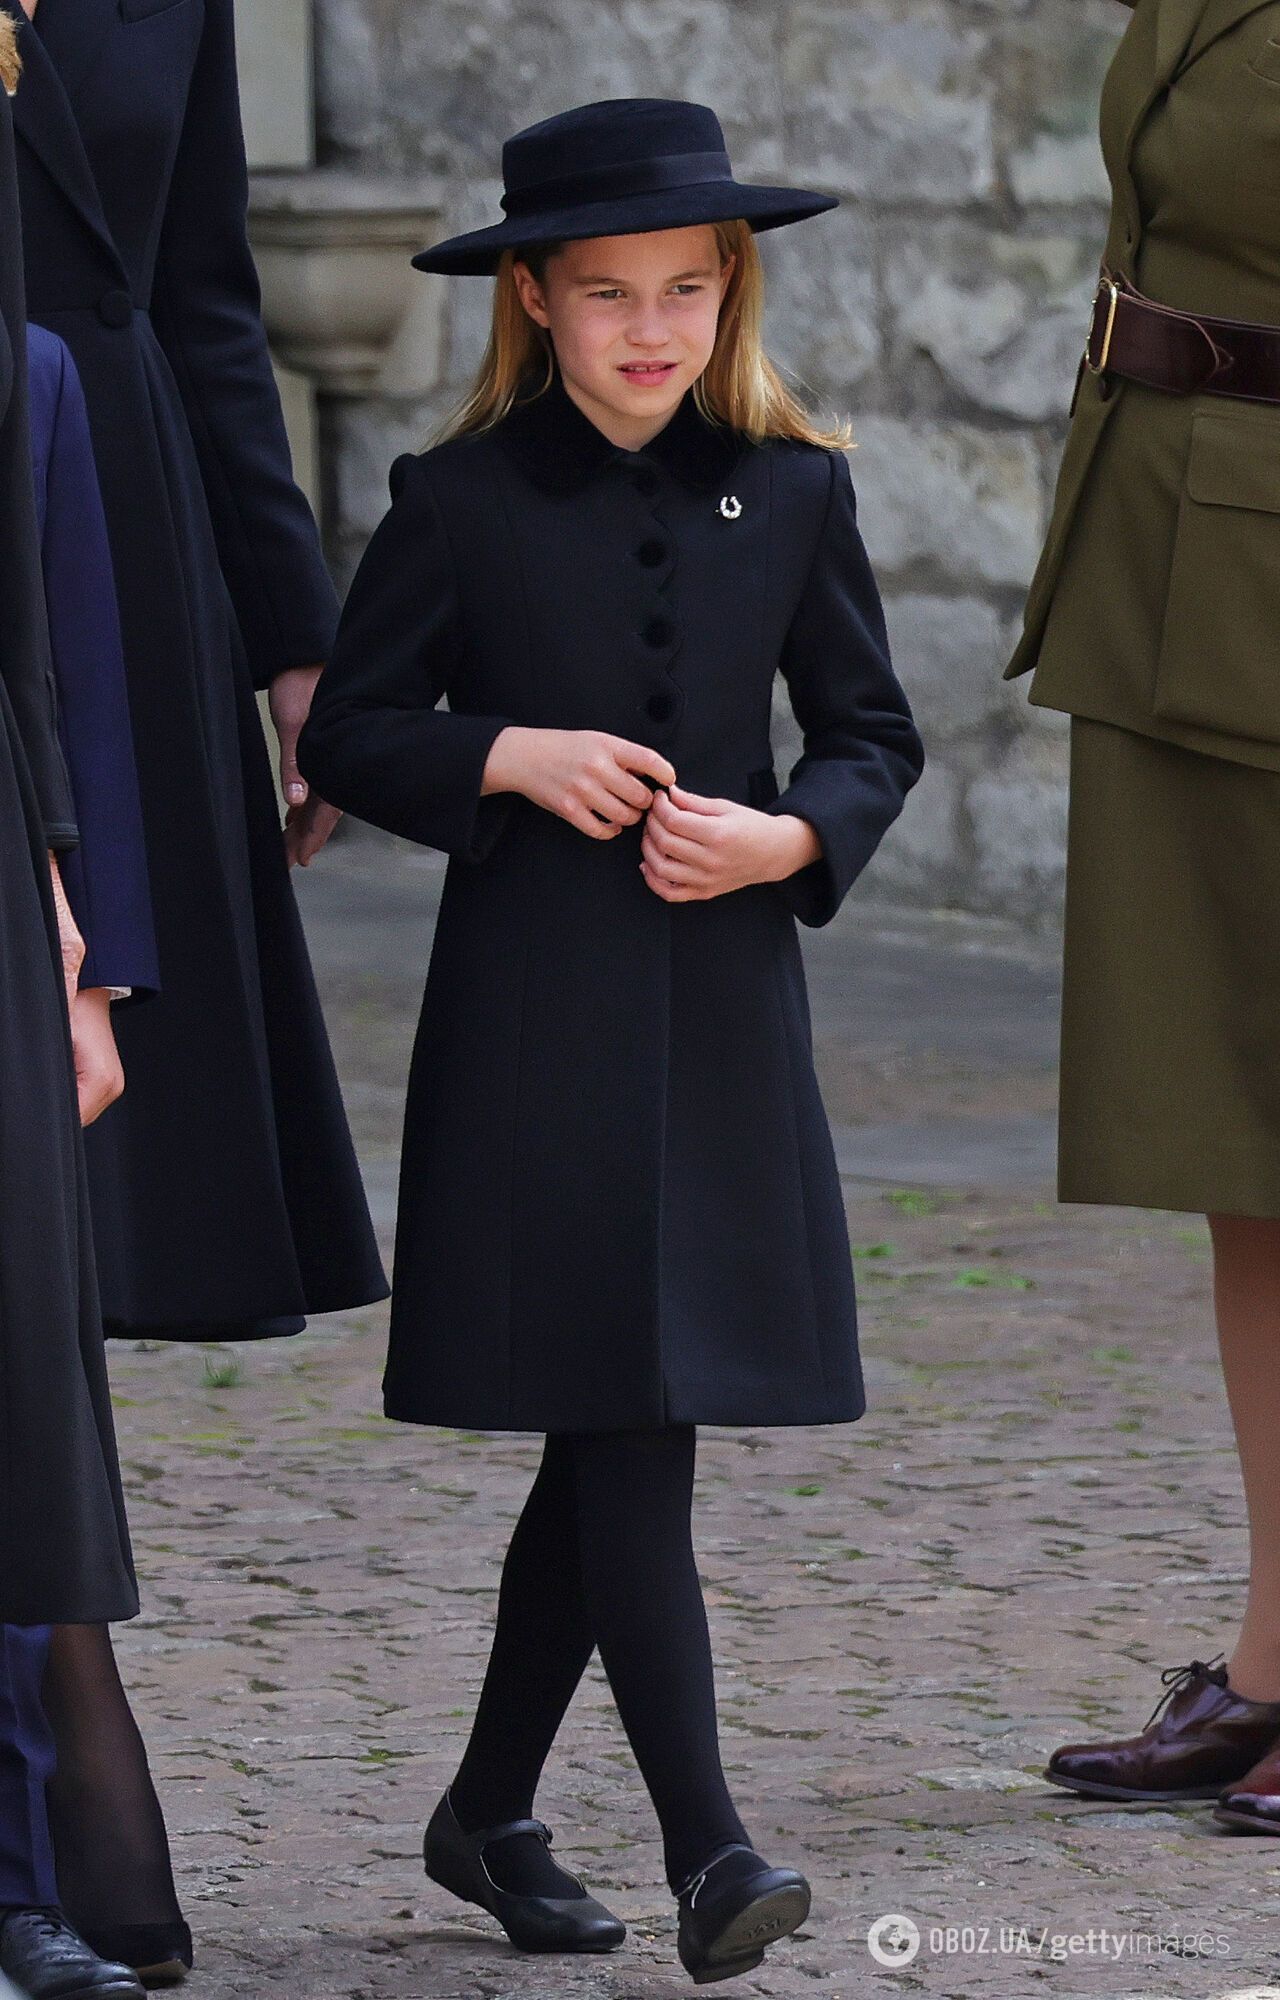 Принцесса Шарлотта расплакалась на похоронах прабабушки Елизаветы II: кадры растрогали сеть